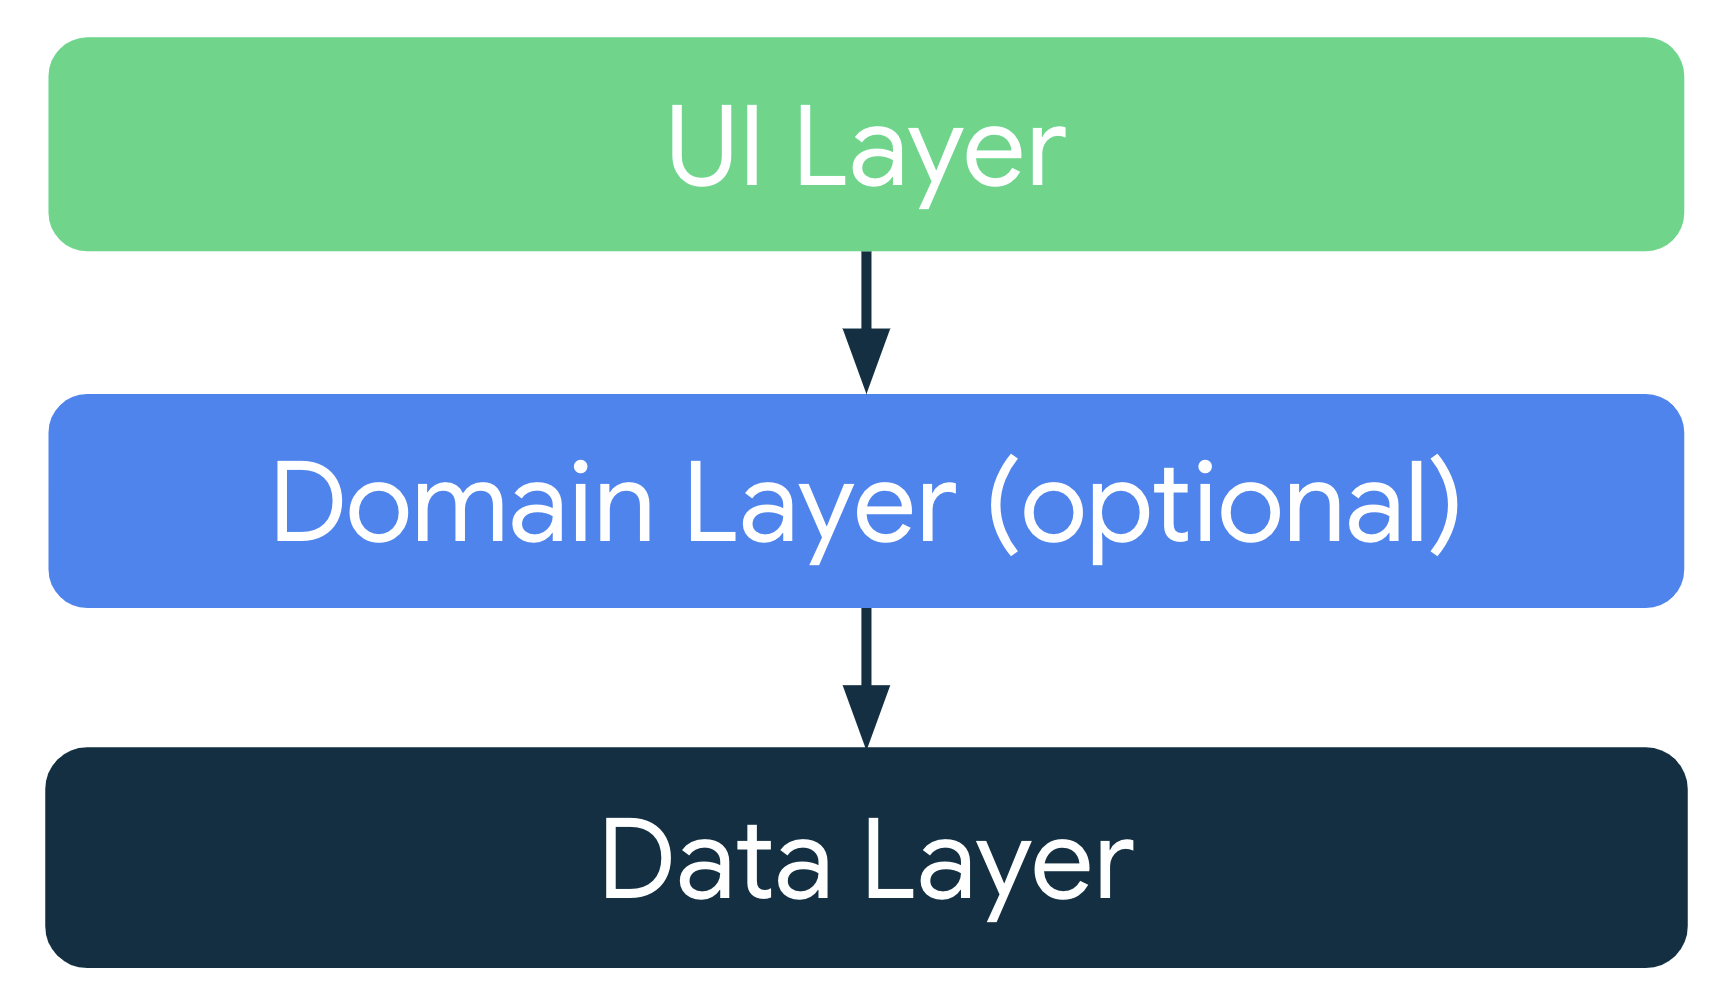 Em uma arquitetura de app típica, a camada de IU recebe os dados do aplicativo
    da camada de dados ou da camada de domínios opcional, que fica entre
    a camada de IU e a camada de dados.